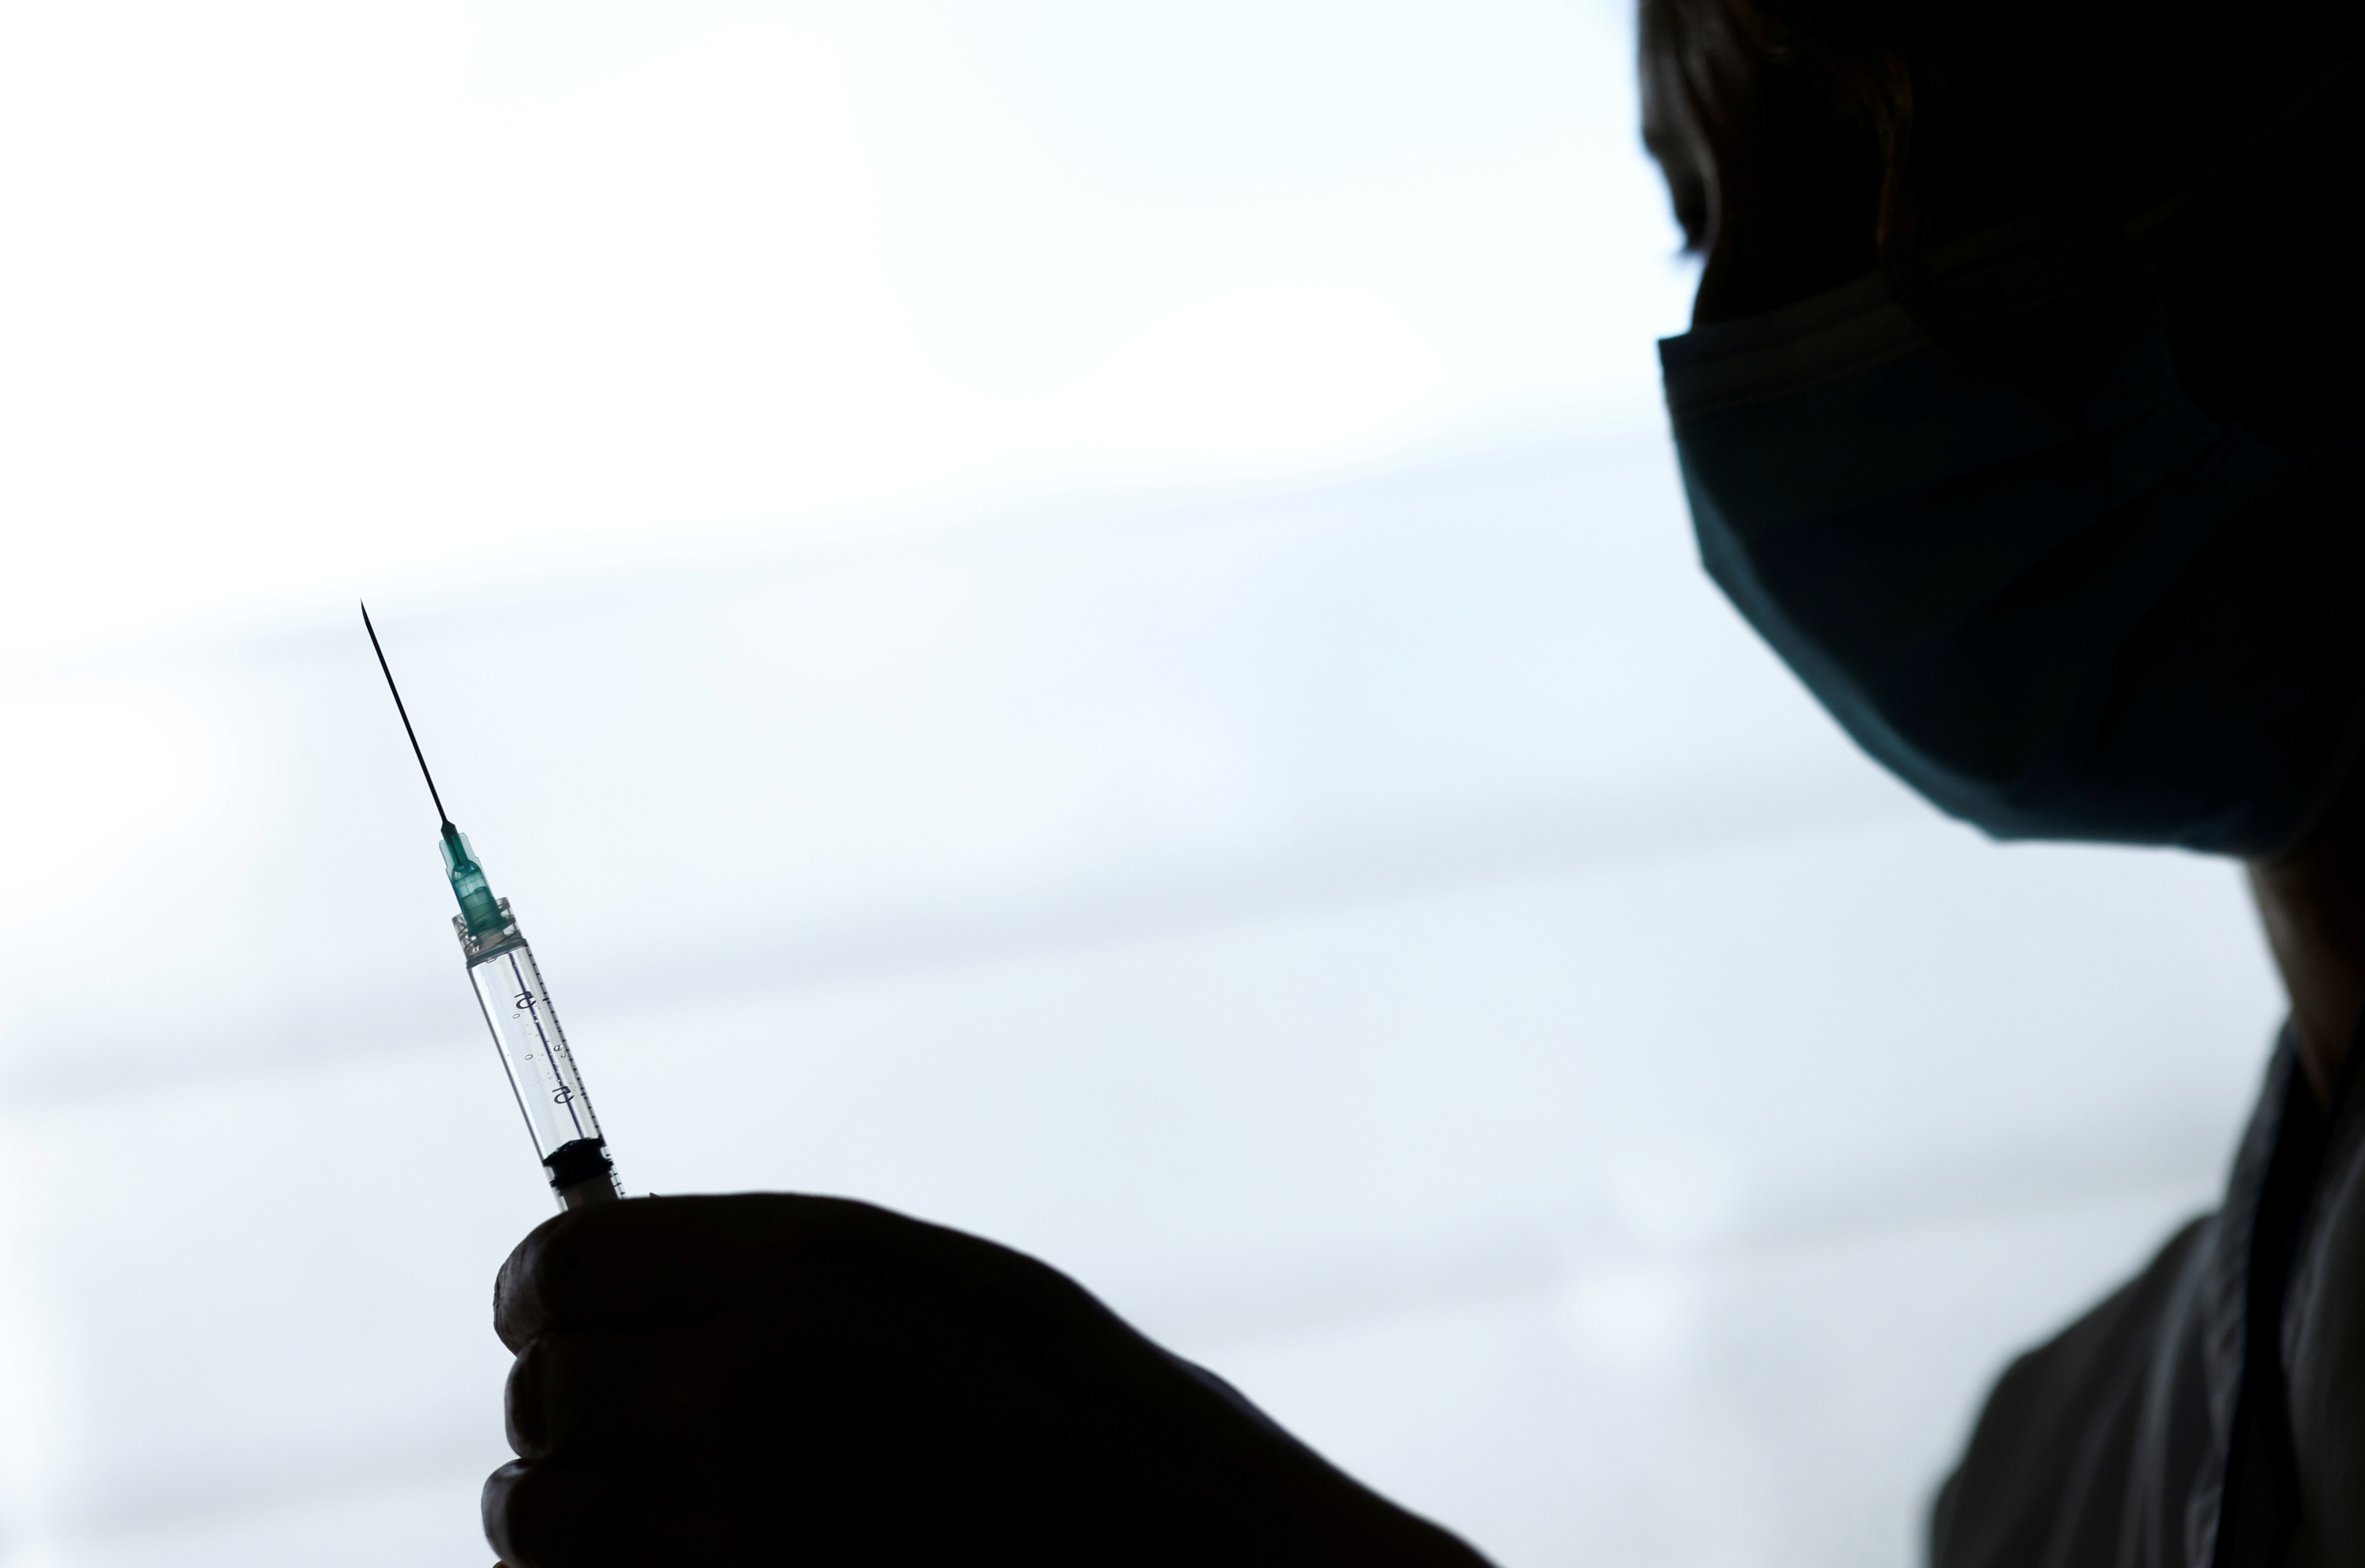 Un soignant prépare une dose du vaccin Pfizer-BioNTech COVID-19 dans un centre de vaccination de l'hôpital Confluent de Nantes, dans le cadre de la campagne de vaccination contre la maladie à coronavirus (COVID-19) en France, le 18 mars 2021. REUTERS/Stephane Mahé